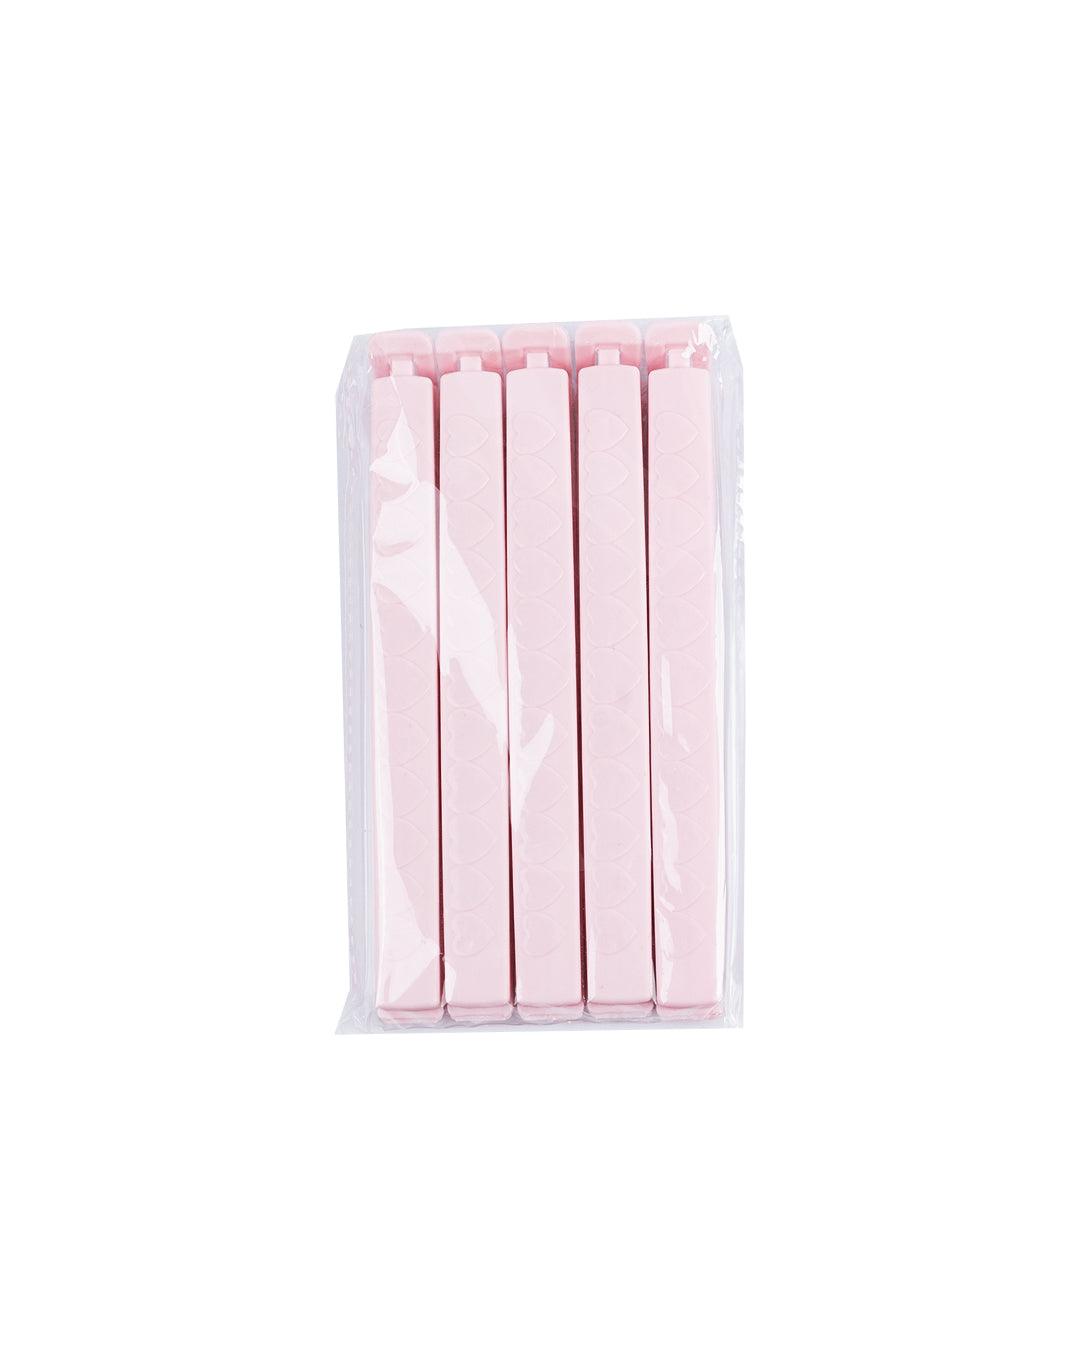 Bag Clips, Pink, Plastic, Set of 5 - MARKET 99